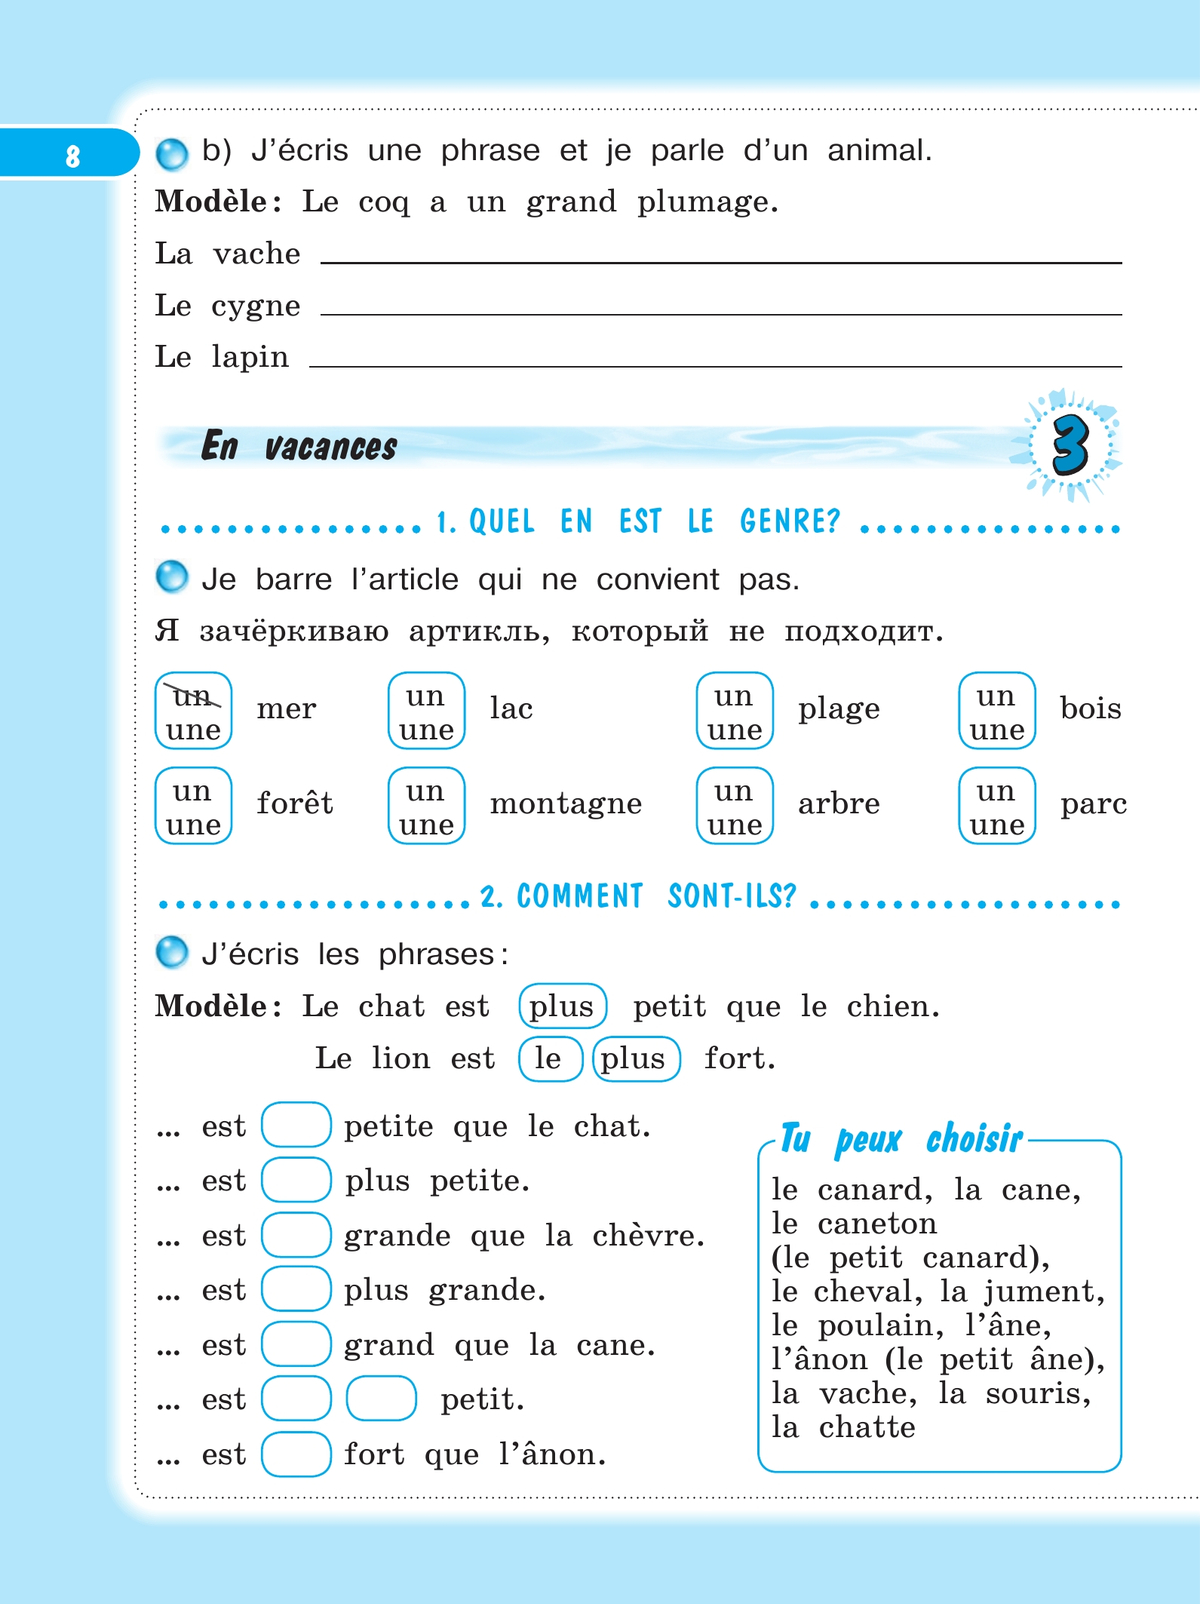 Французский язык. Рабочая тетрадь. 4 класс. 8